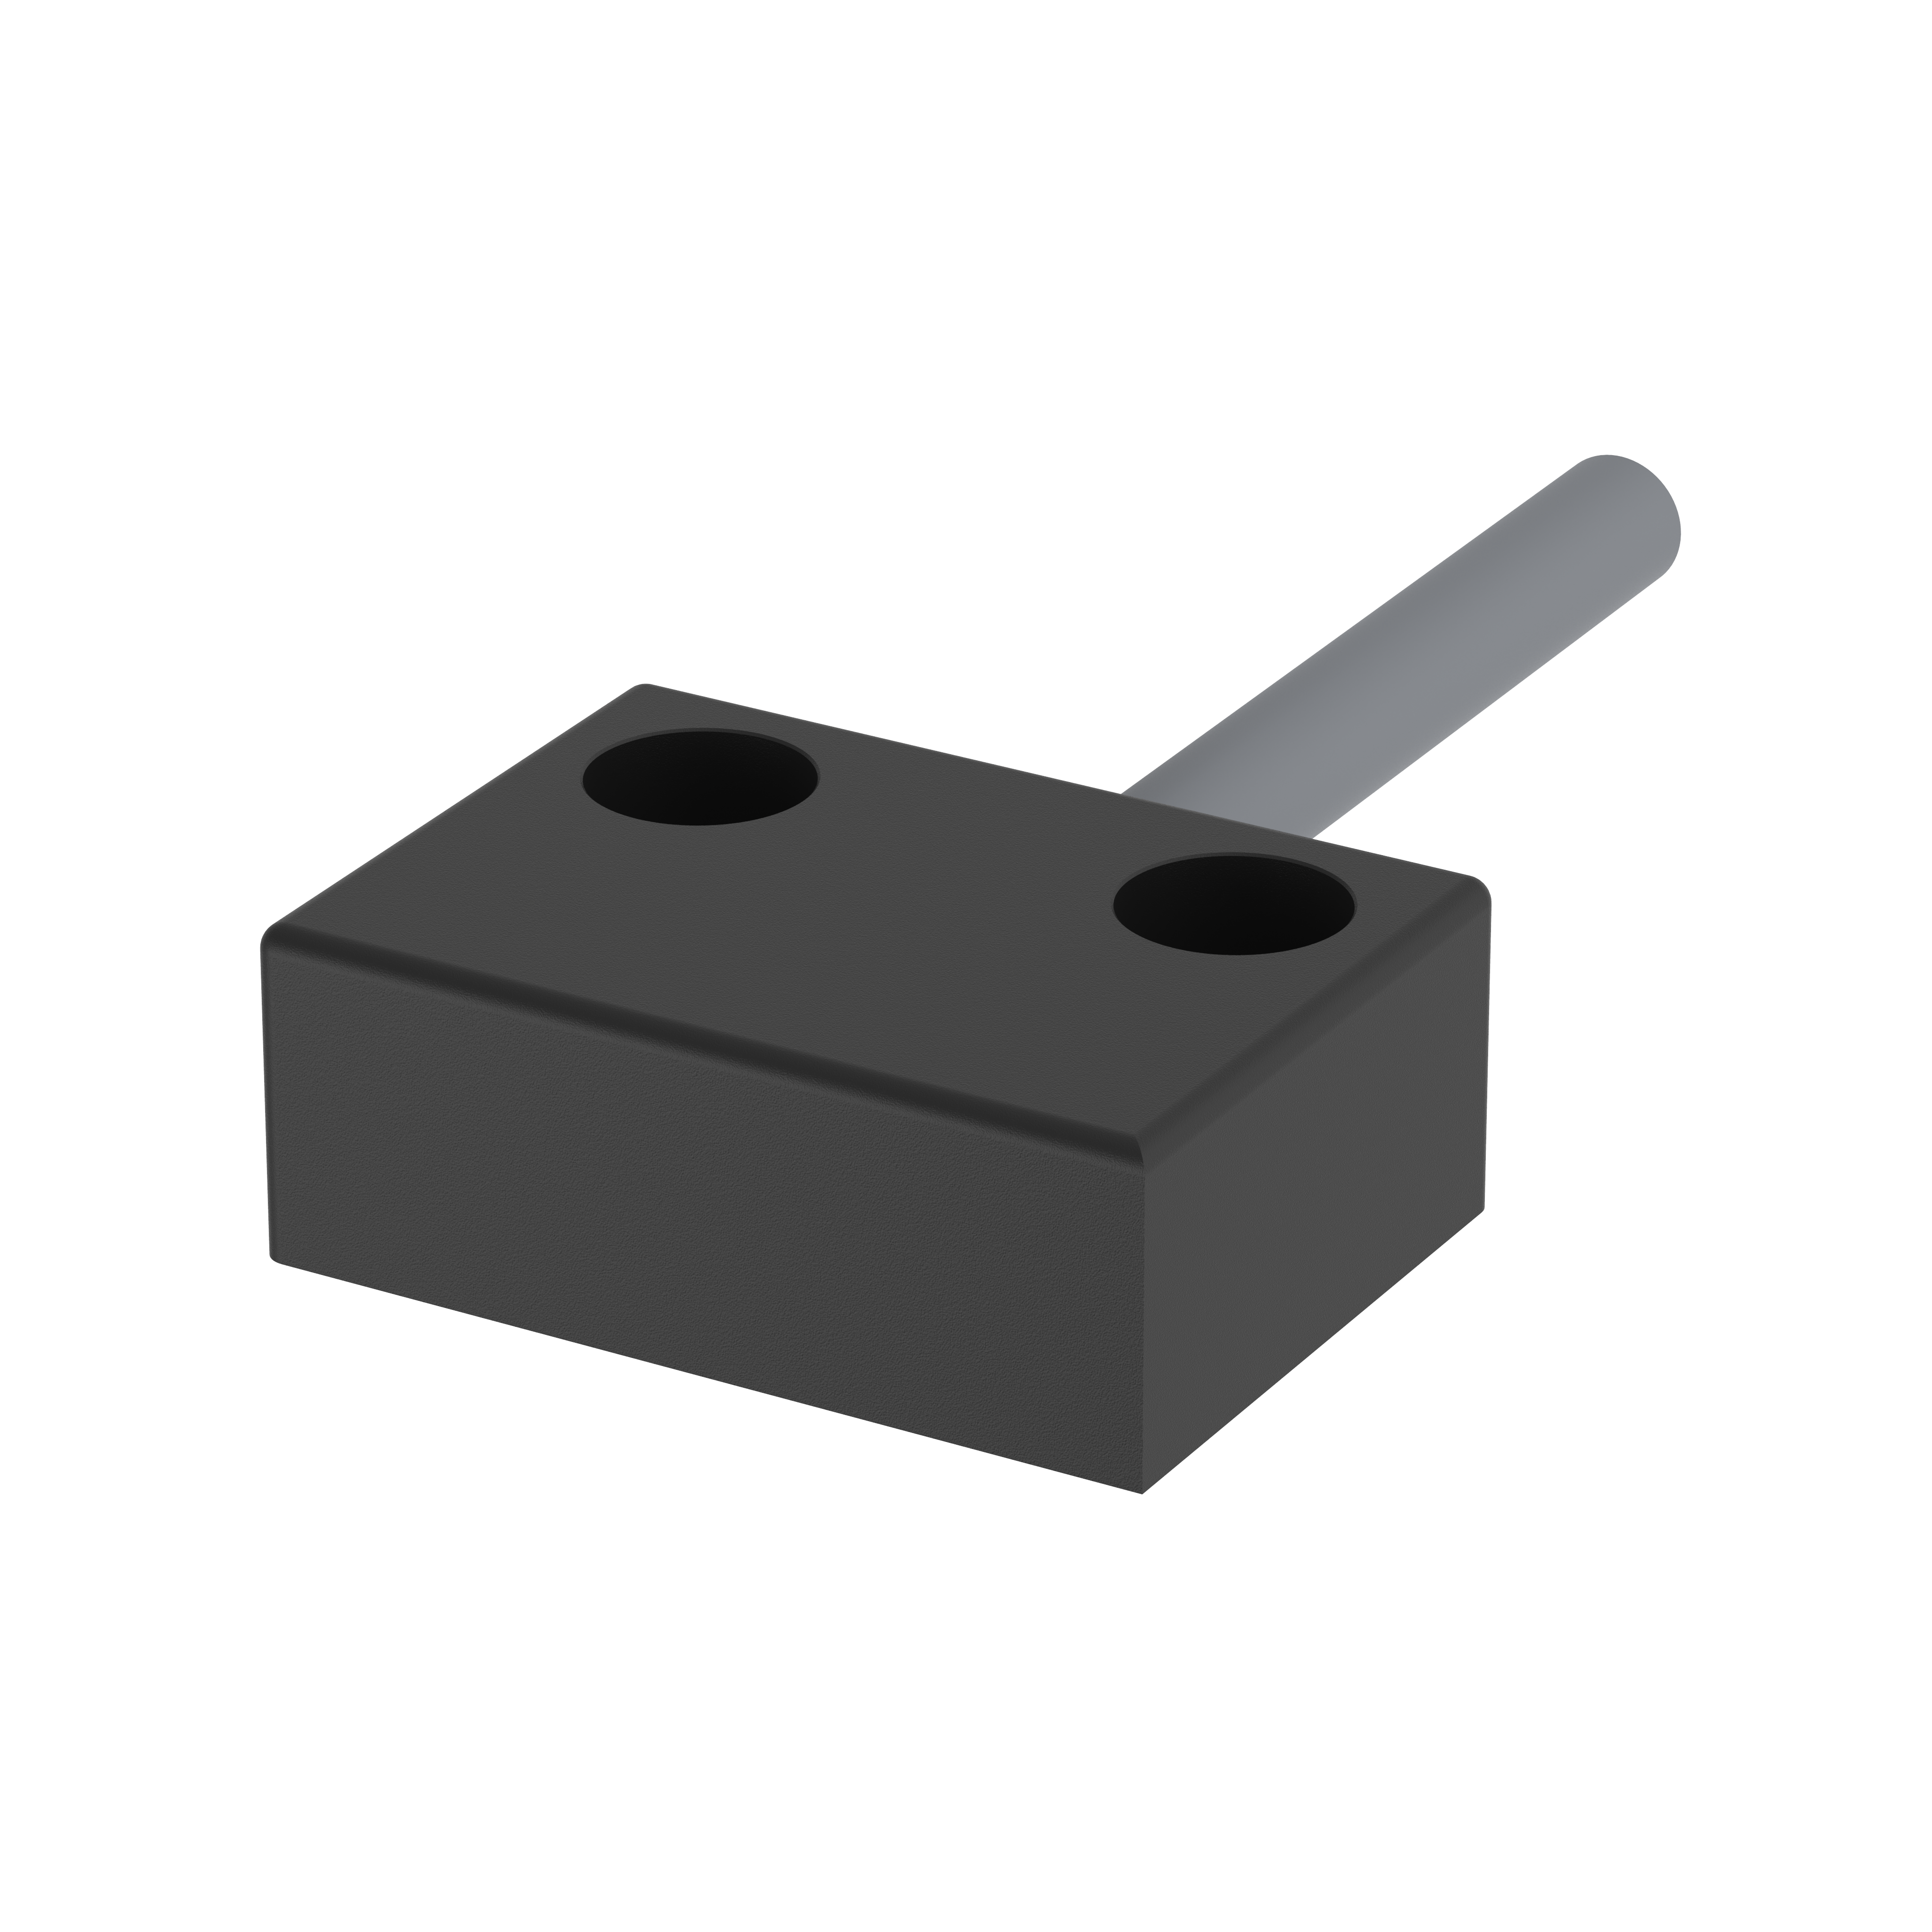 Näherungsschalter - Magnetsensor - 153230-3 - Wechsler, 3m PVC Kabel